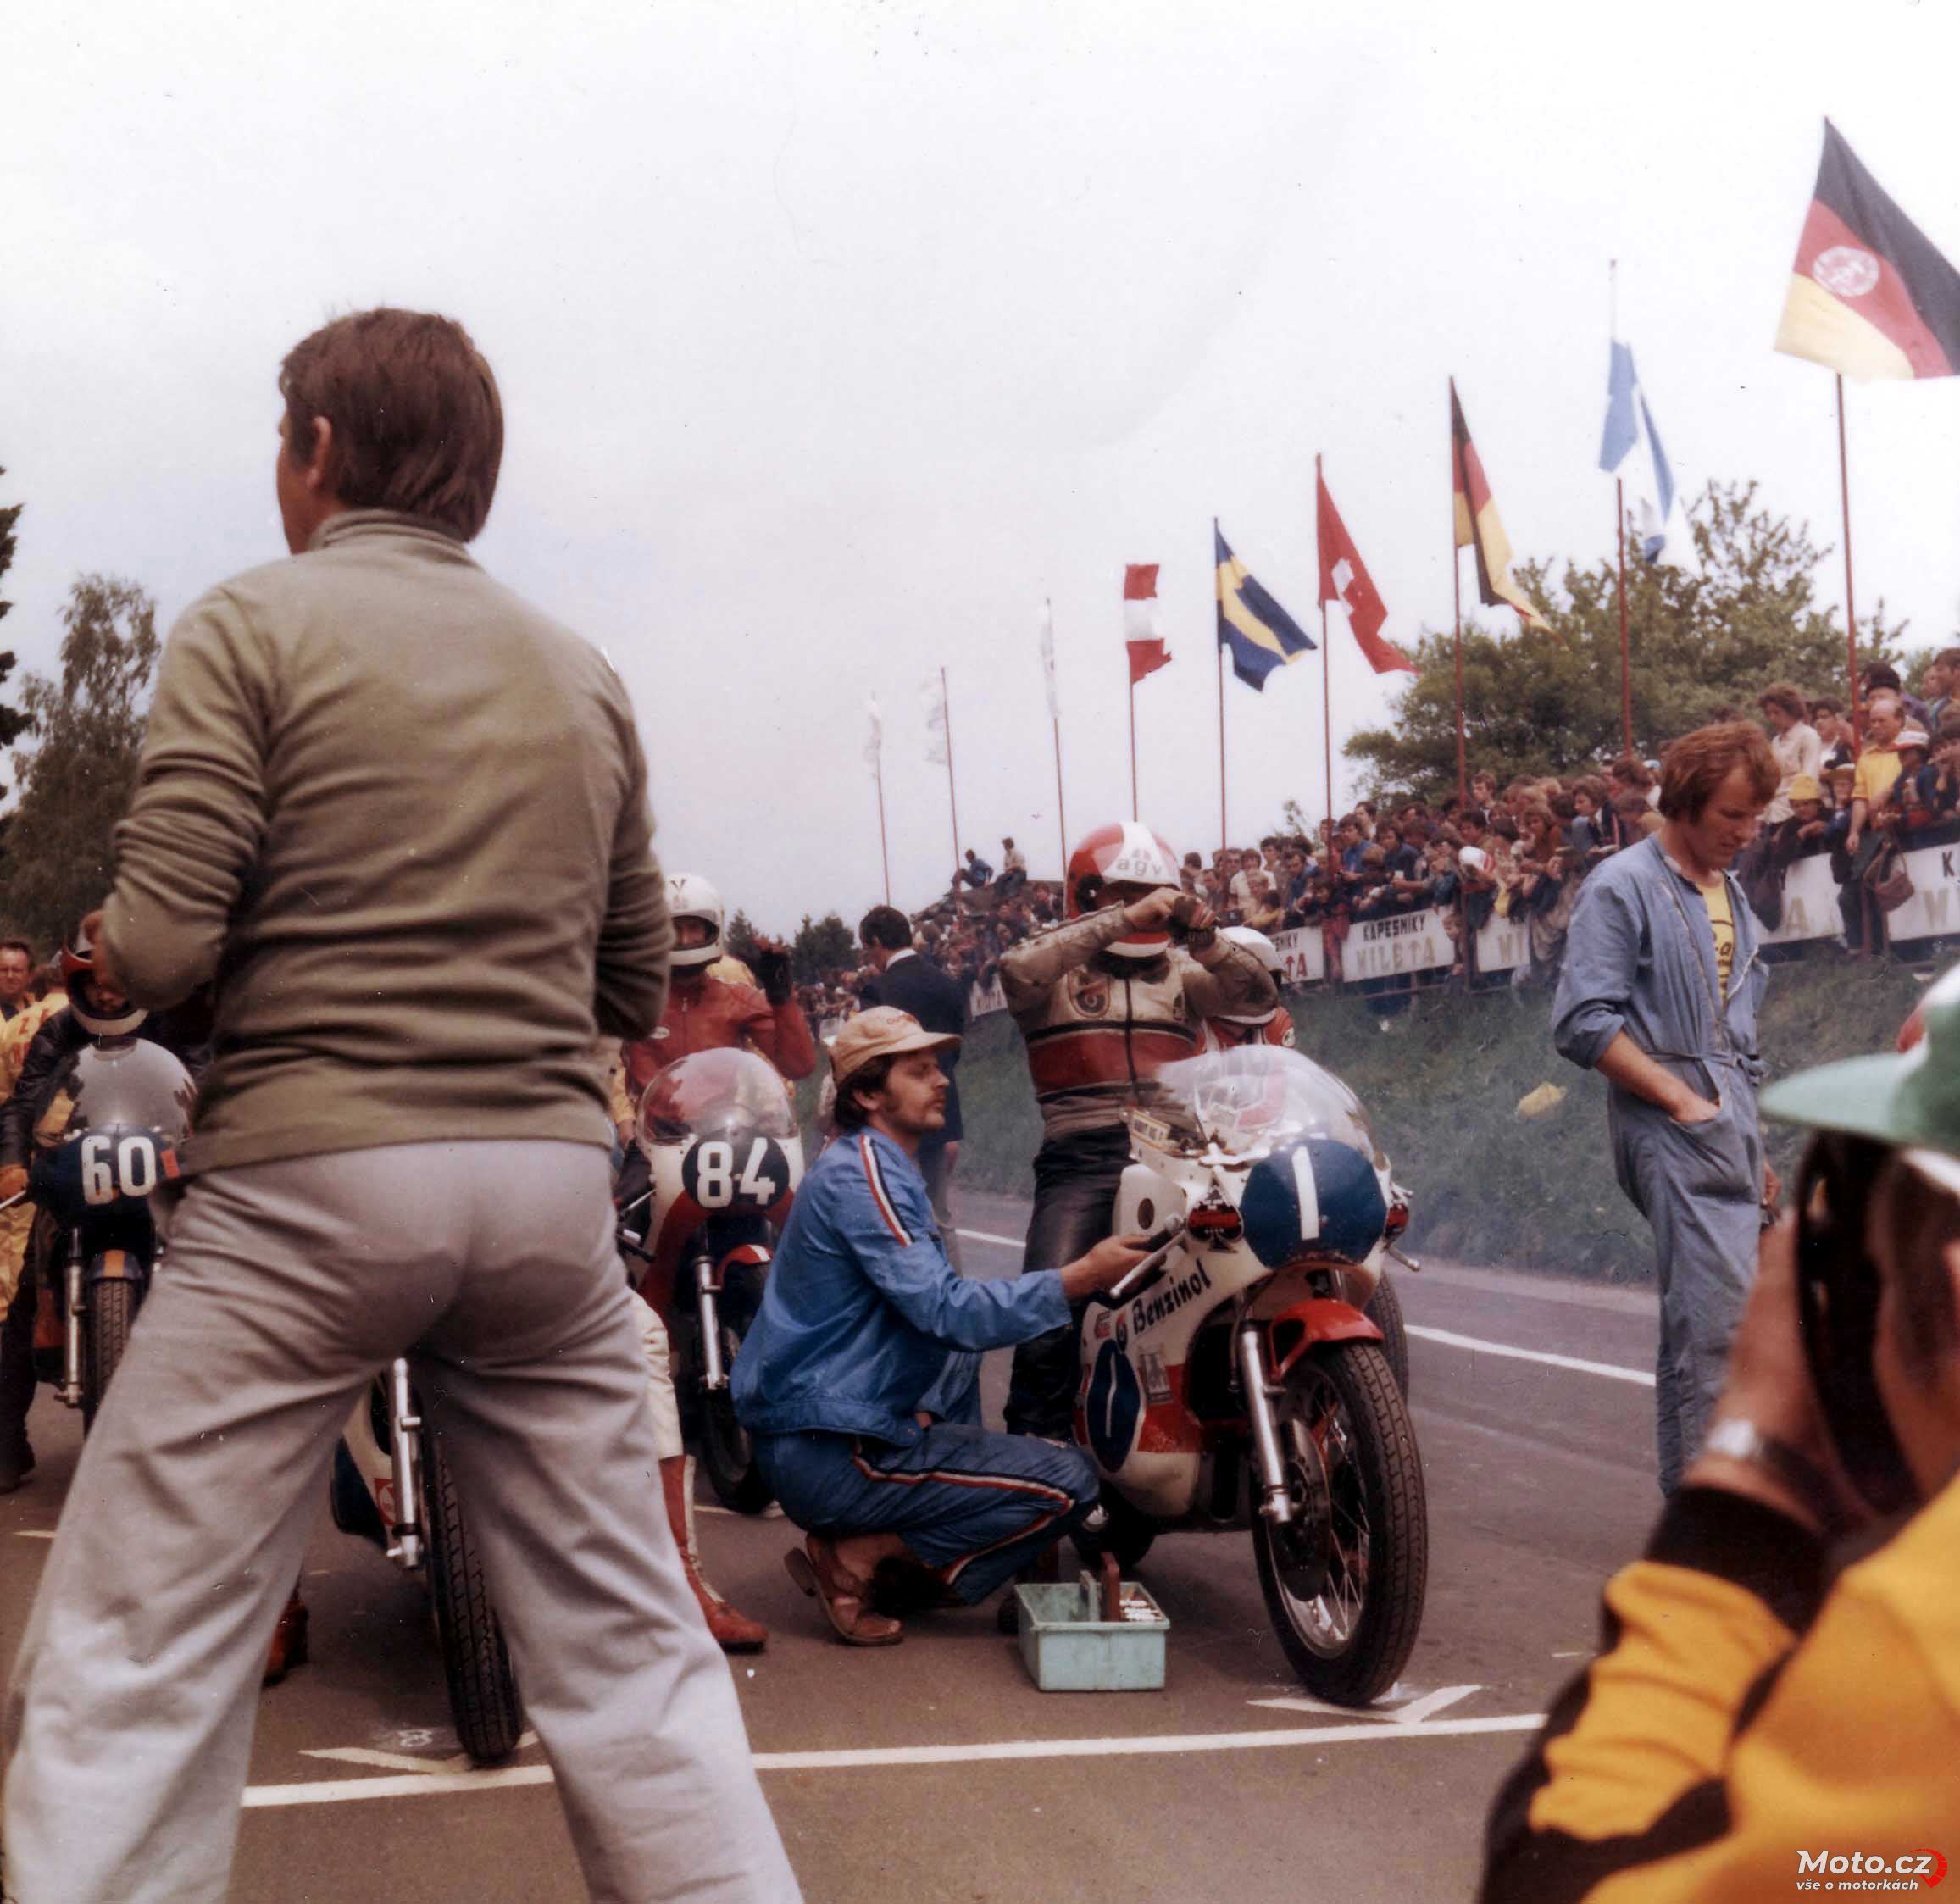 Hořice 1979 start do 350ccm 3., zlato v kategorii do 125ccm